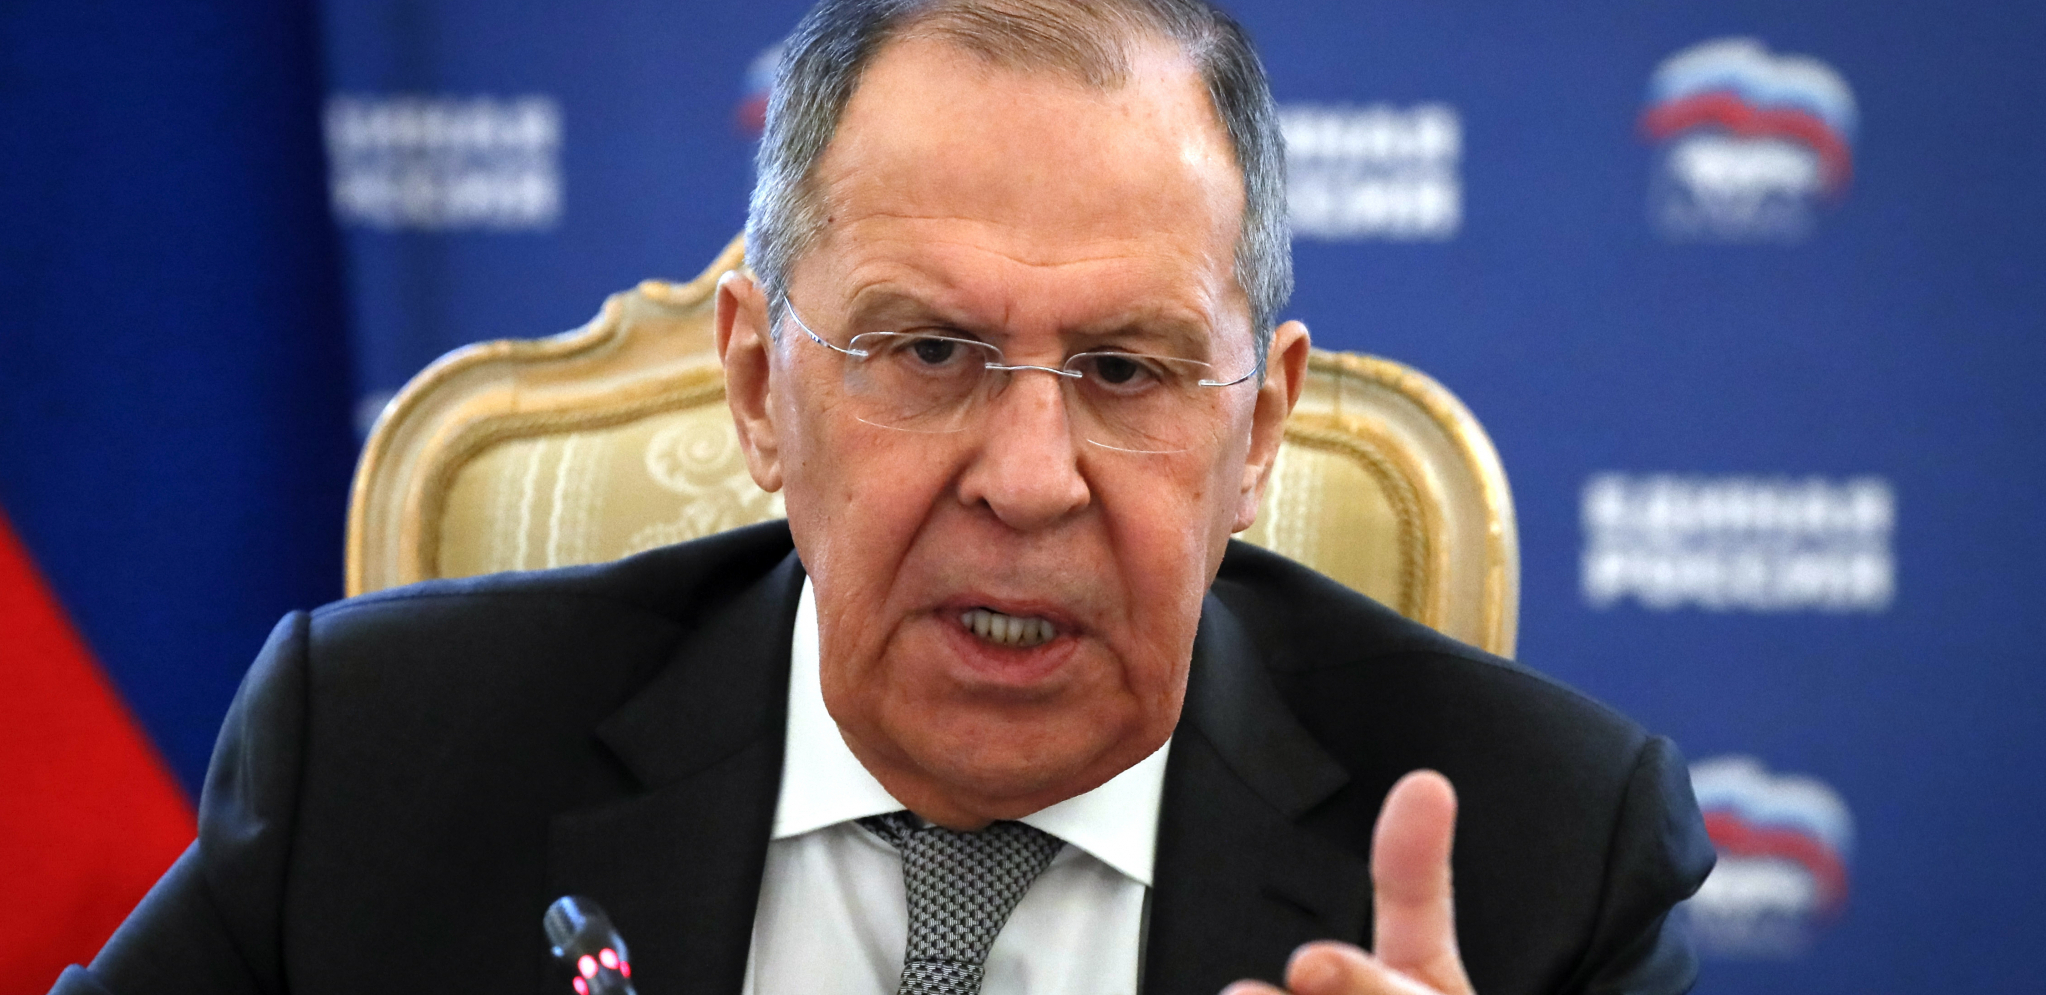 RUSKI ŠAMAR EVROPSKIM LIDERIMA Kad se Lavrov oglasi bride obrazi